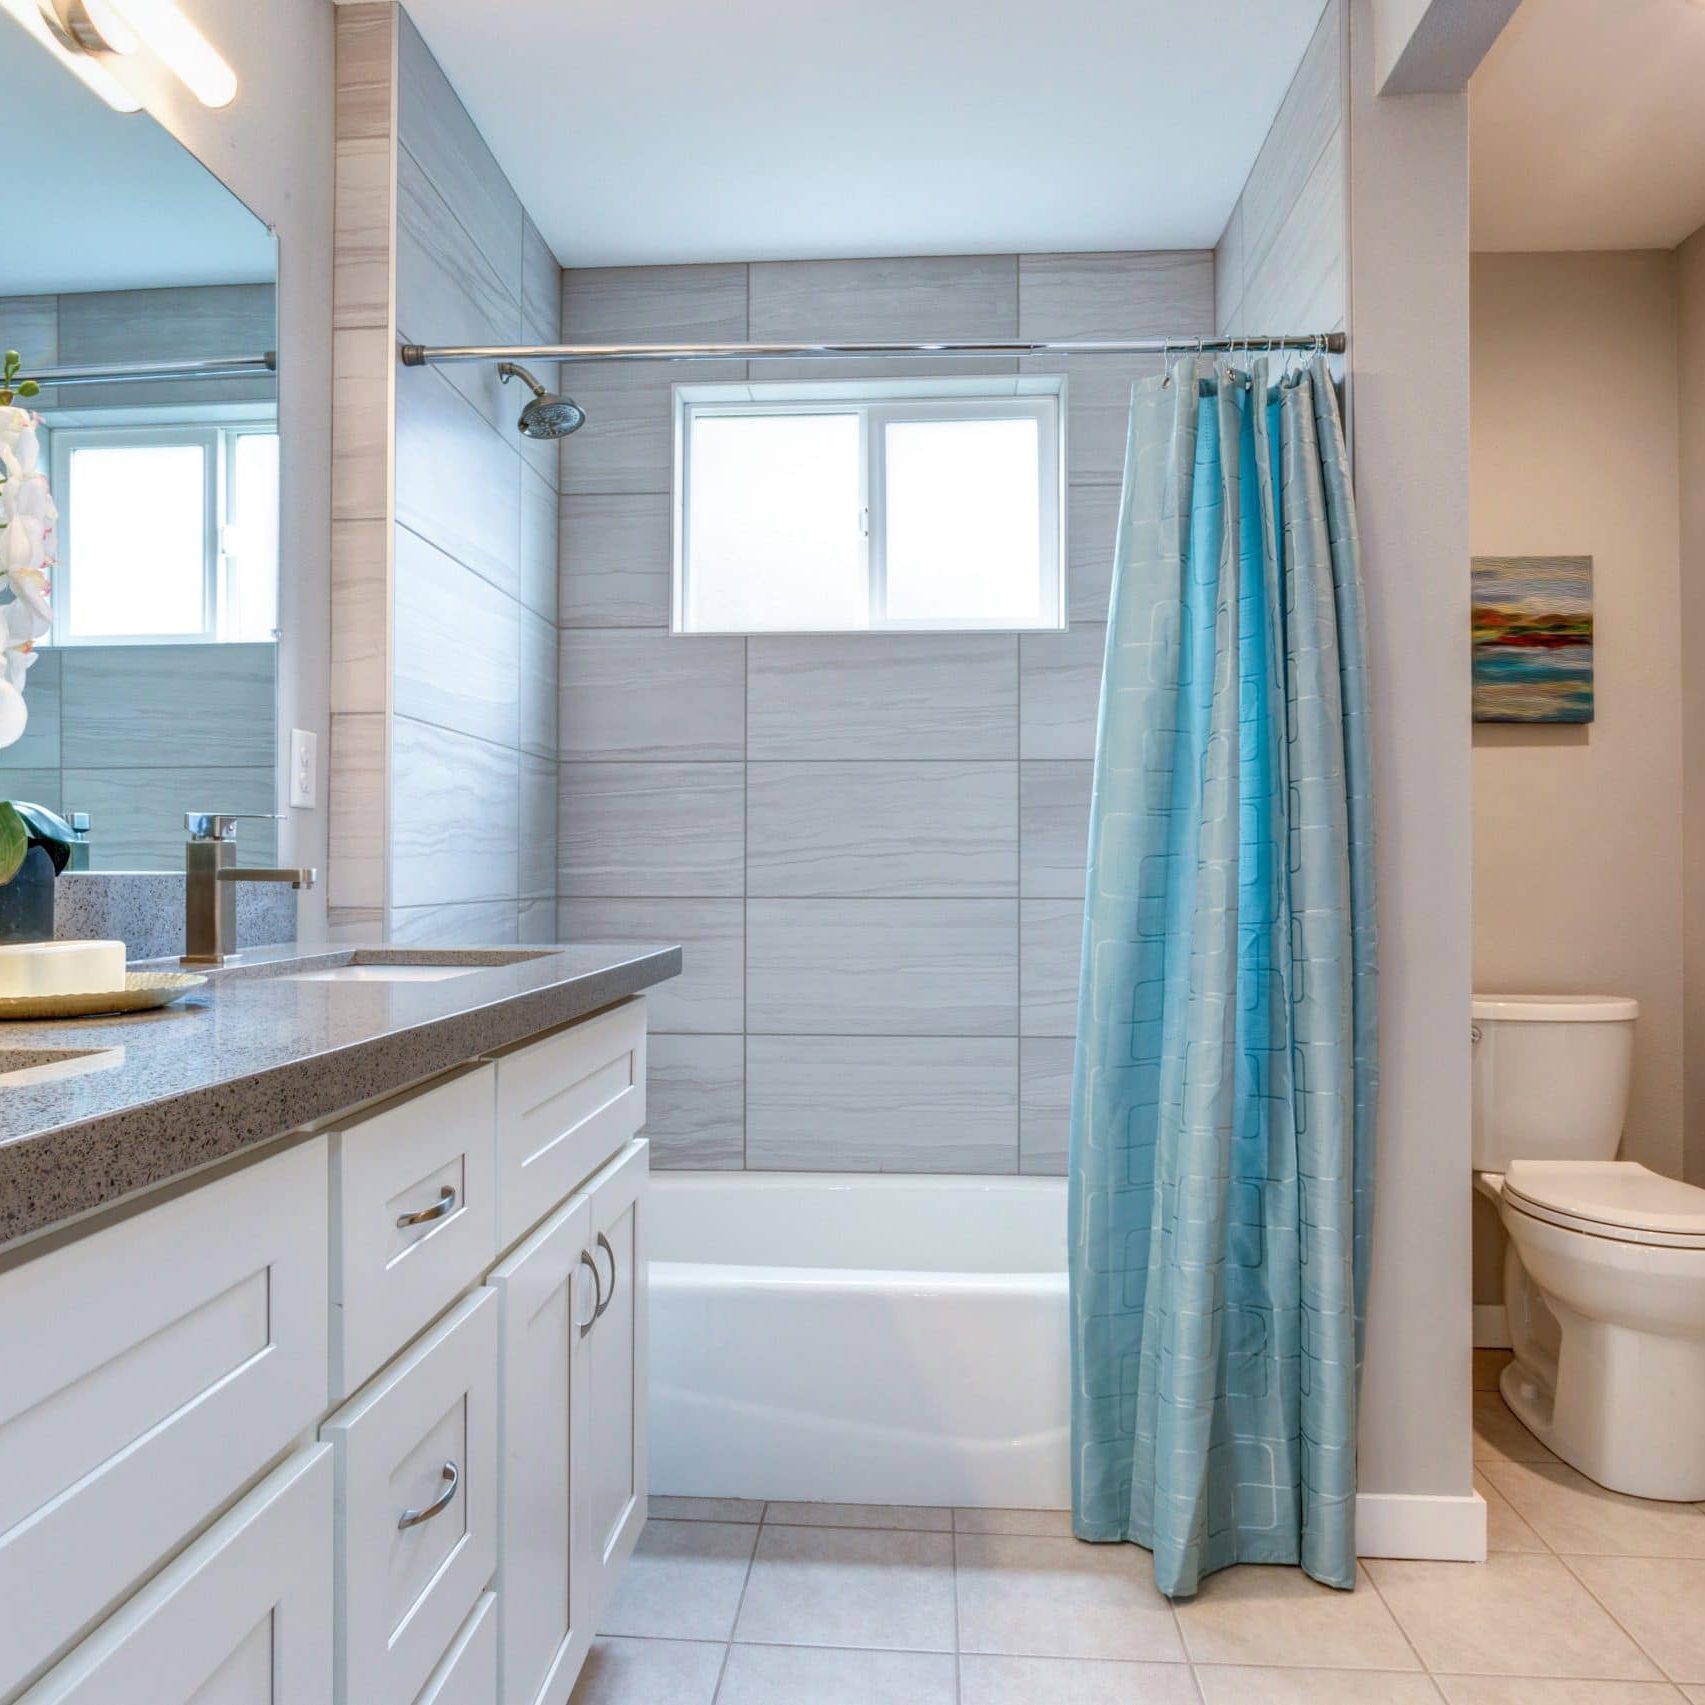 Elegant warm color bathroom design in a freshly remodeled house.